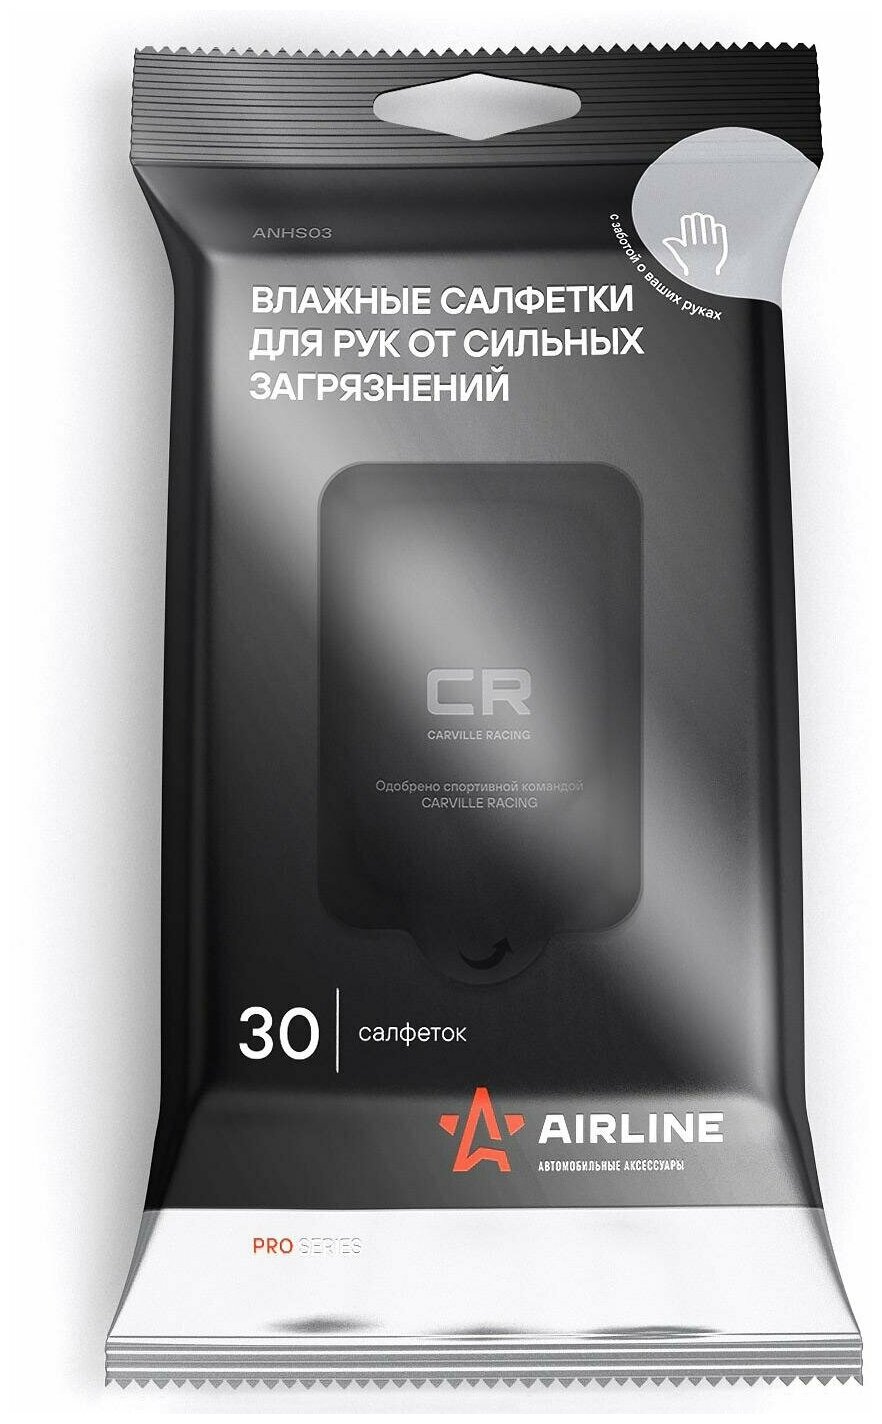 AIRLINE ANHS03 Салфетки влажные для рук от сильных загрязнений PRO (30 шт.)